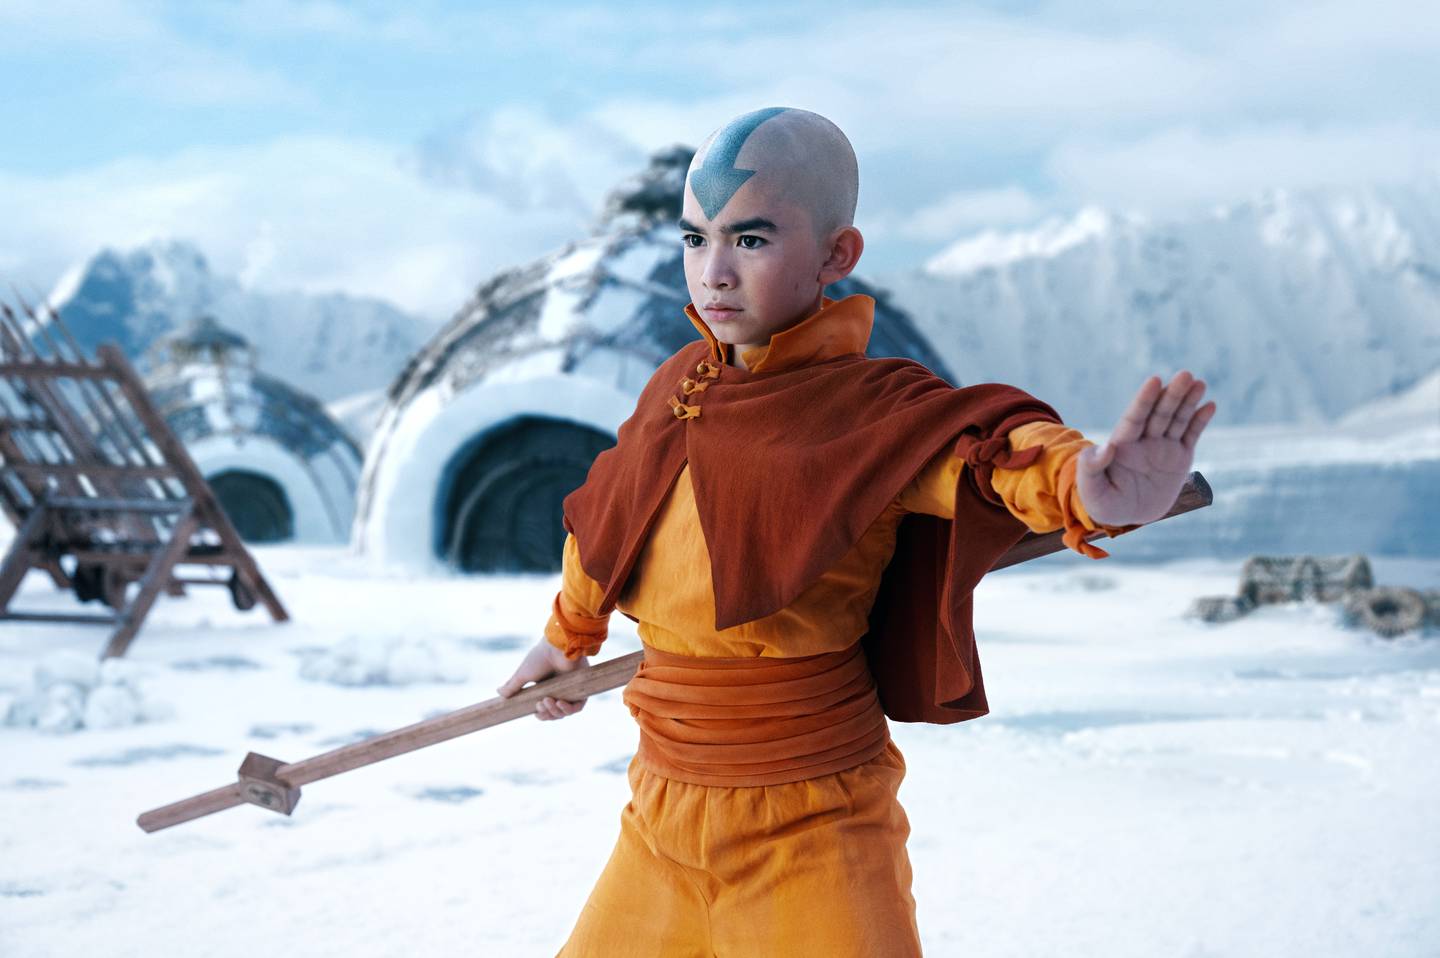 Fantasyserien «Avatar: The Last Airbender» er en ny stor TV-produksjon Netflix satser på skal fenge abonnenter på flere kontinenter i 2024. Gordon Cormier har rollen som Aang, en gutt med overnaturlige krefter i serien basert på en svært populær animasjonsserie fra 2000-tallet.